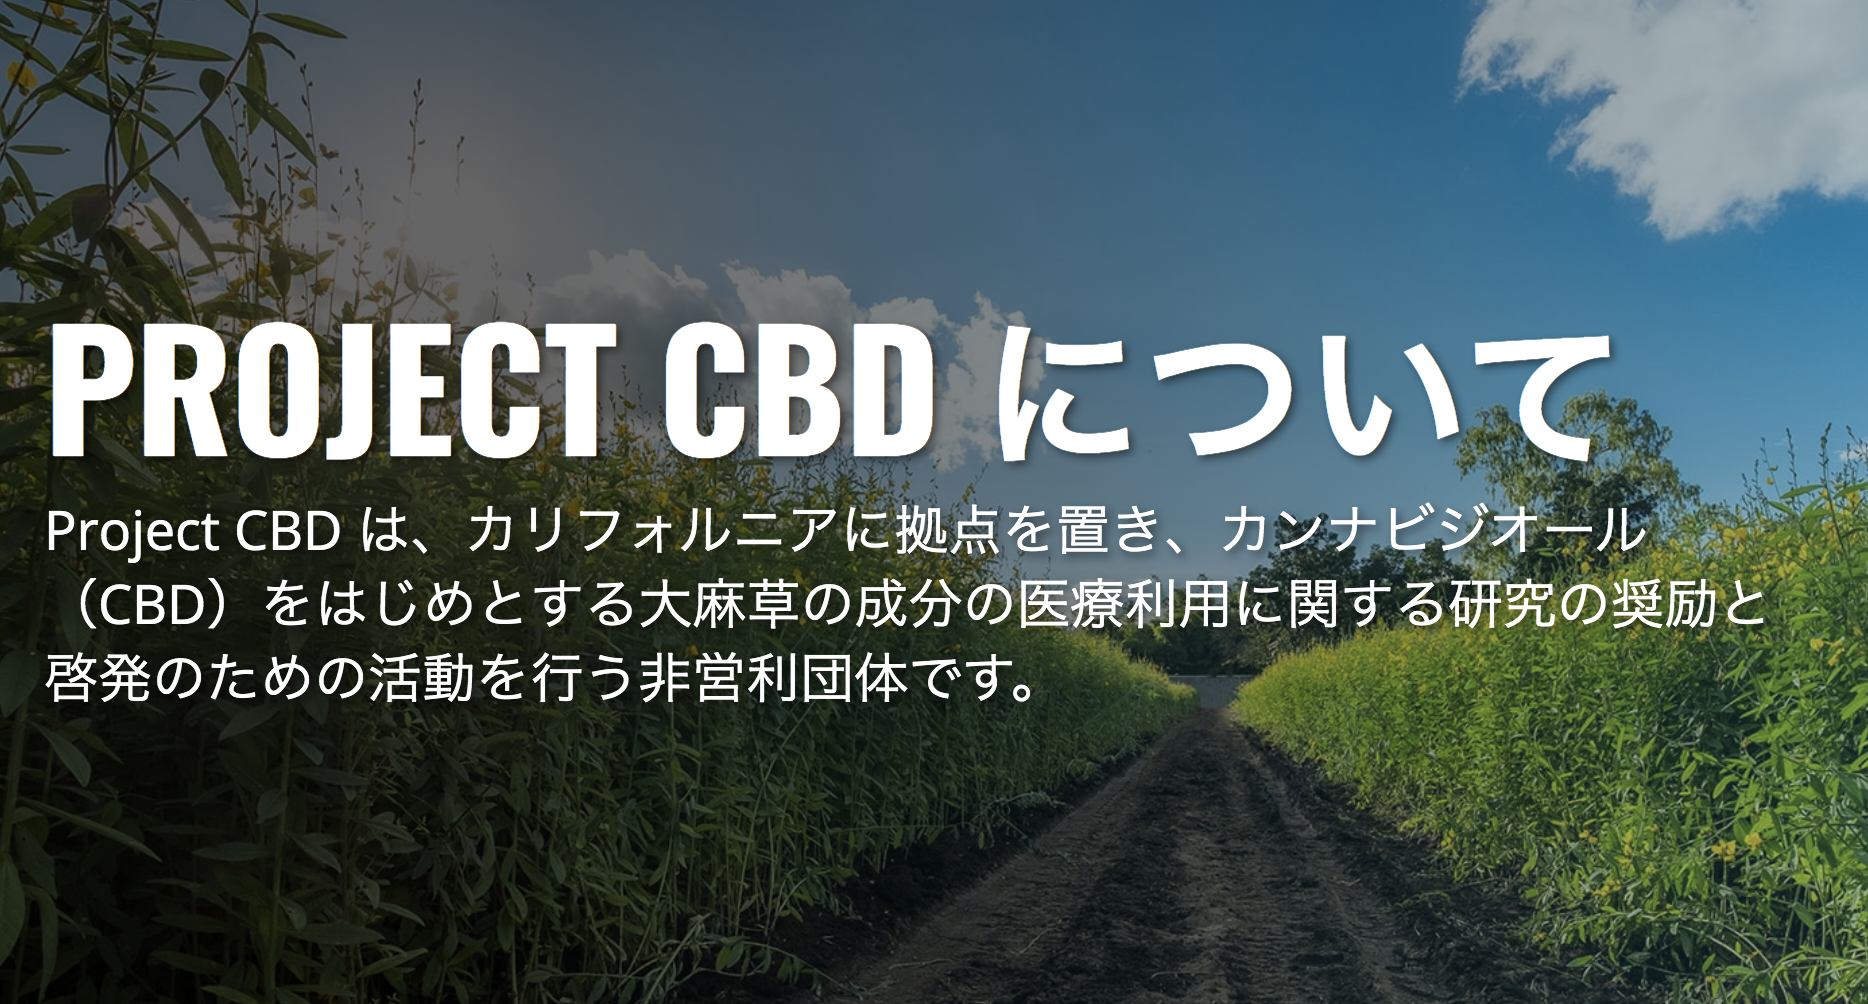 アルペントル株式会社は、プロジェクトCBDジャパンの活動を支援しています。